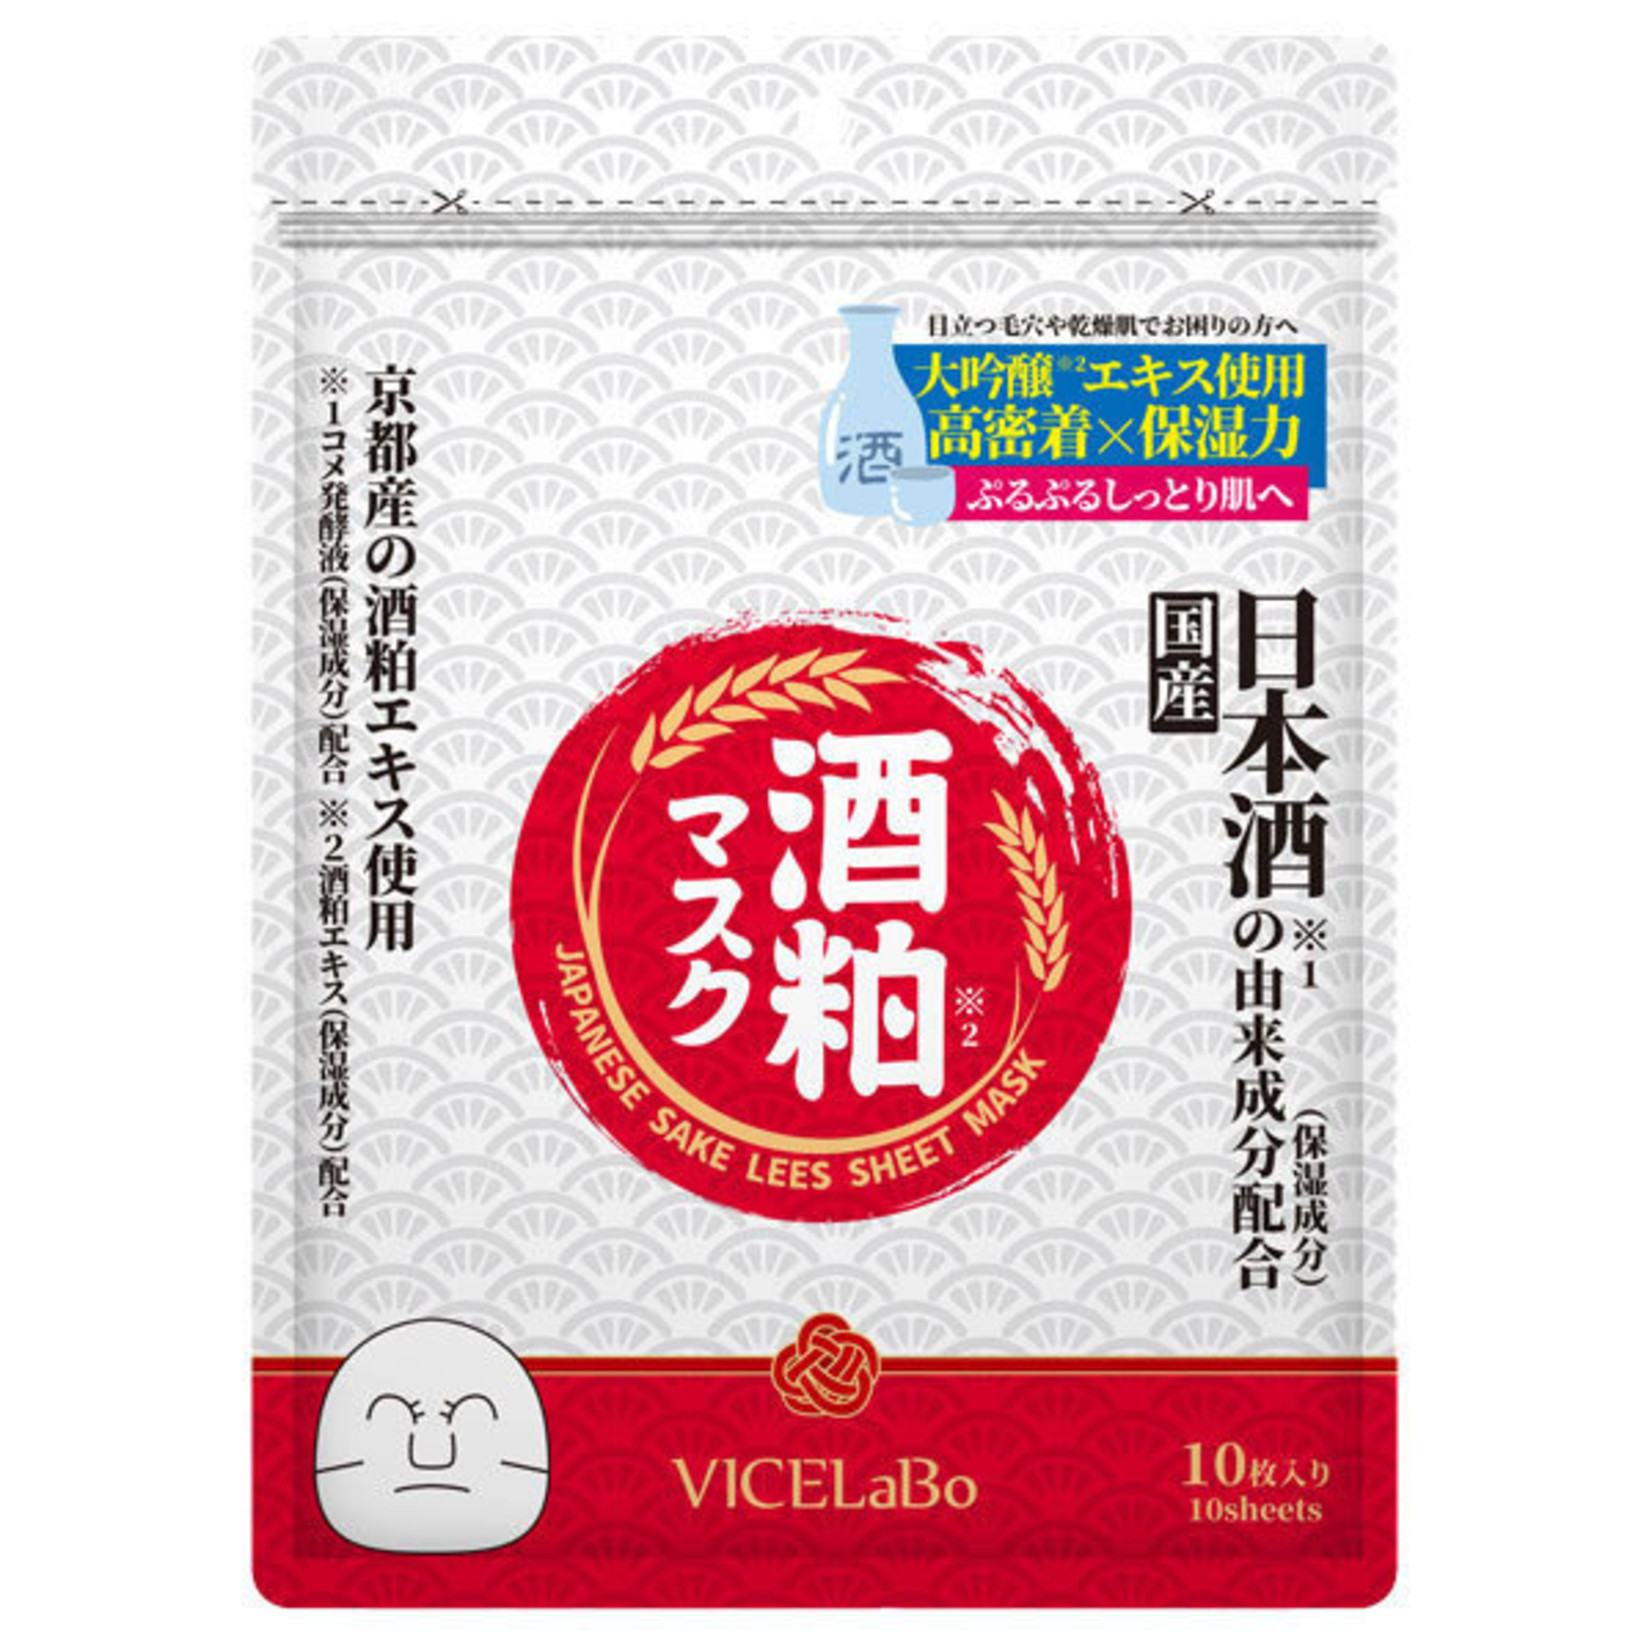 VICELabo Japanese Sake Lees Sheet Mask (10 pcs)